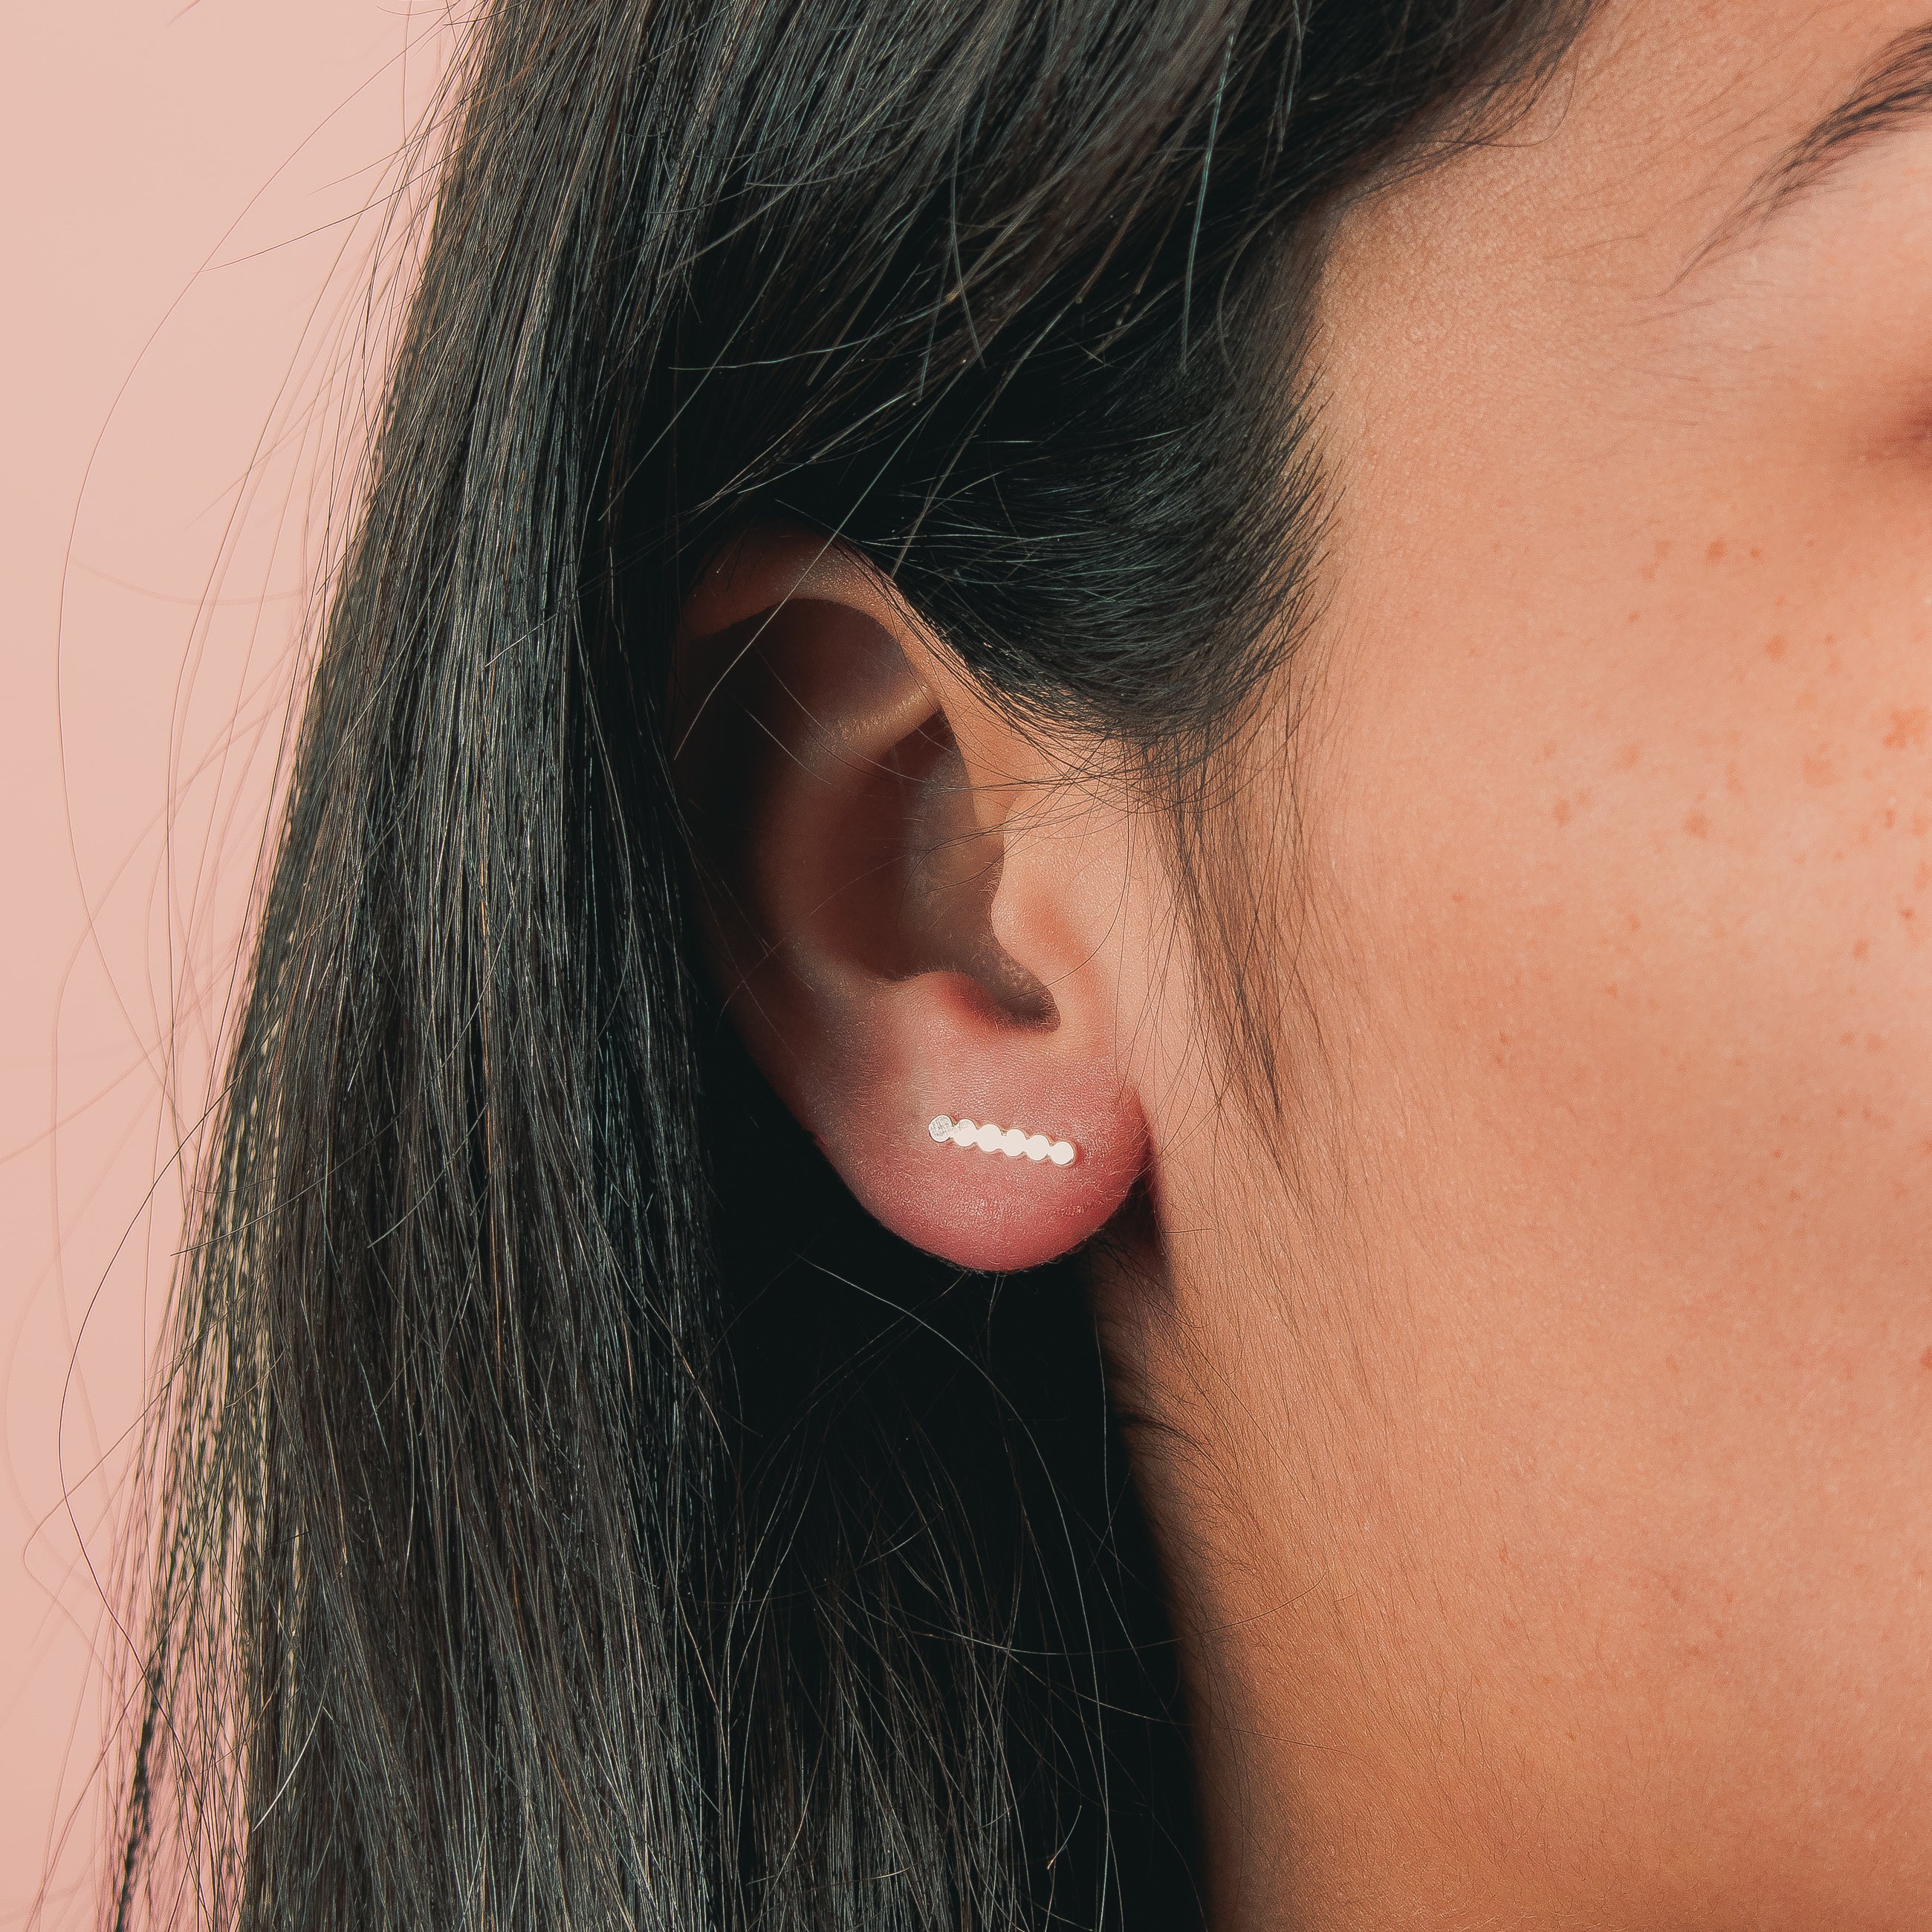 Glimmer Stud Earrings - Melanie Golden Jewelry - earrings, everyday, everyday essentials, post earrings, stud, stud earrings